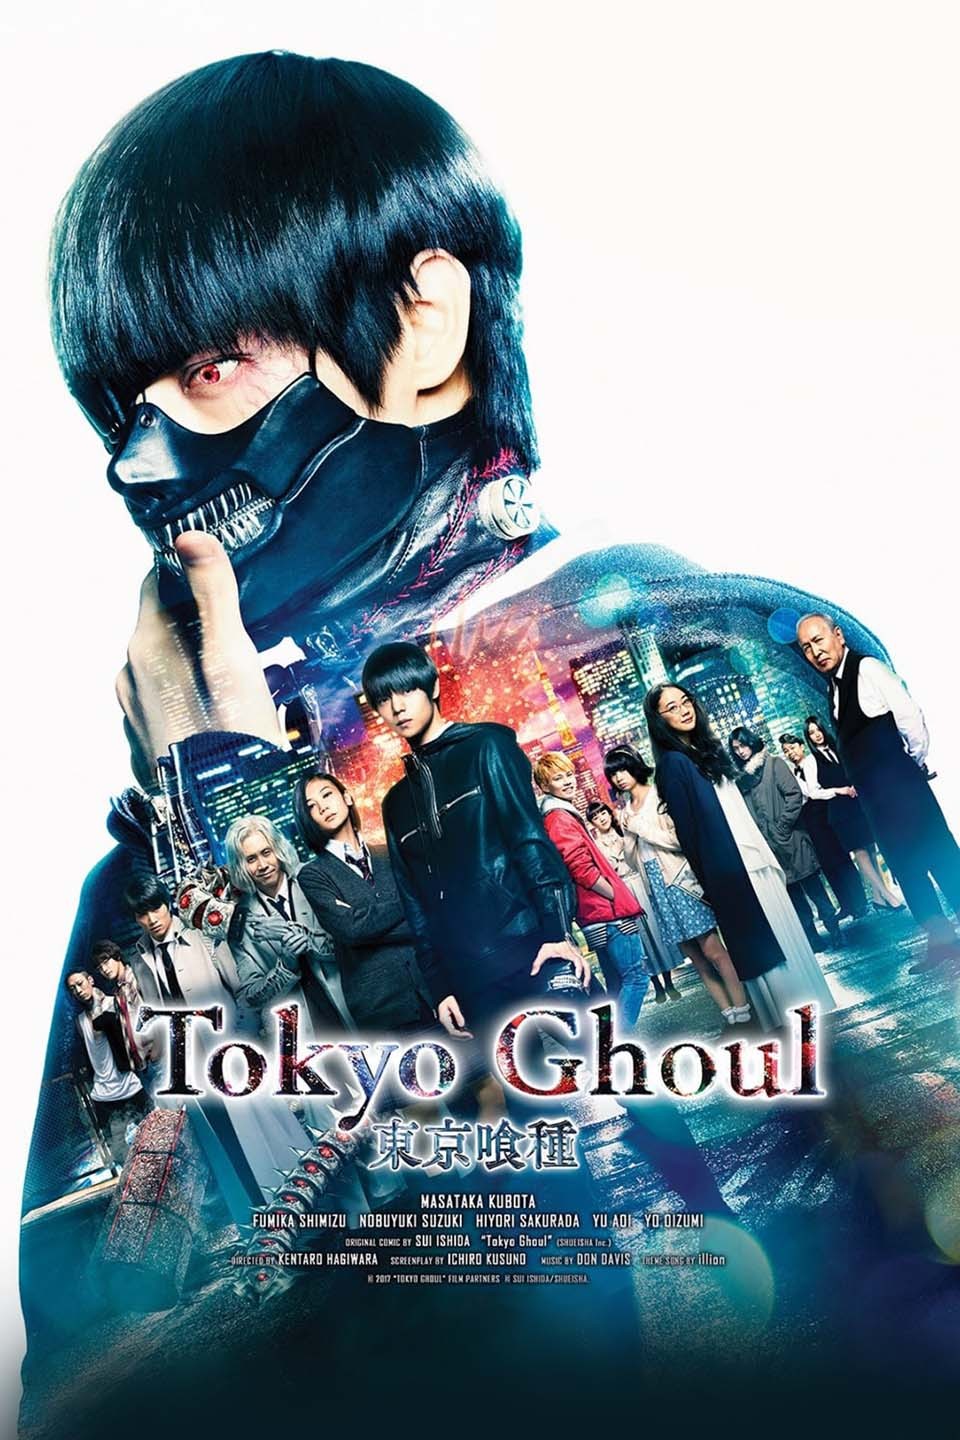 Tokyo Ghoul (Portuguese Dub) Tragedy - Watch on Crunchyroll